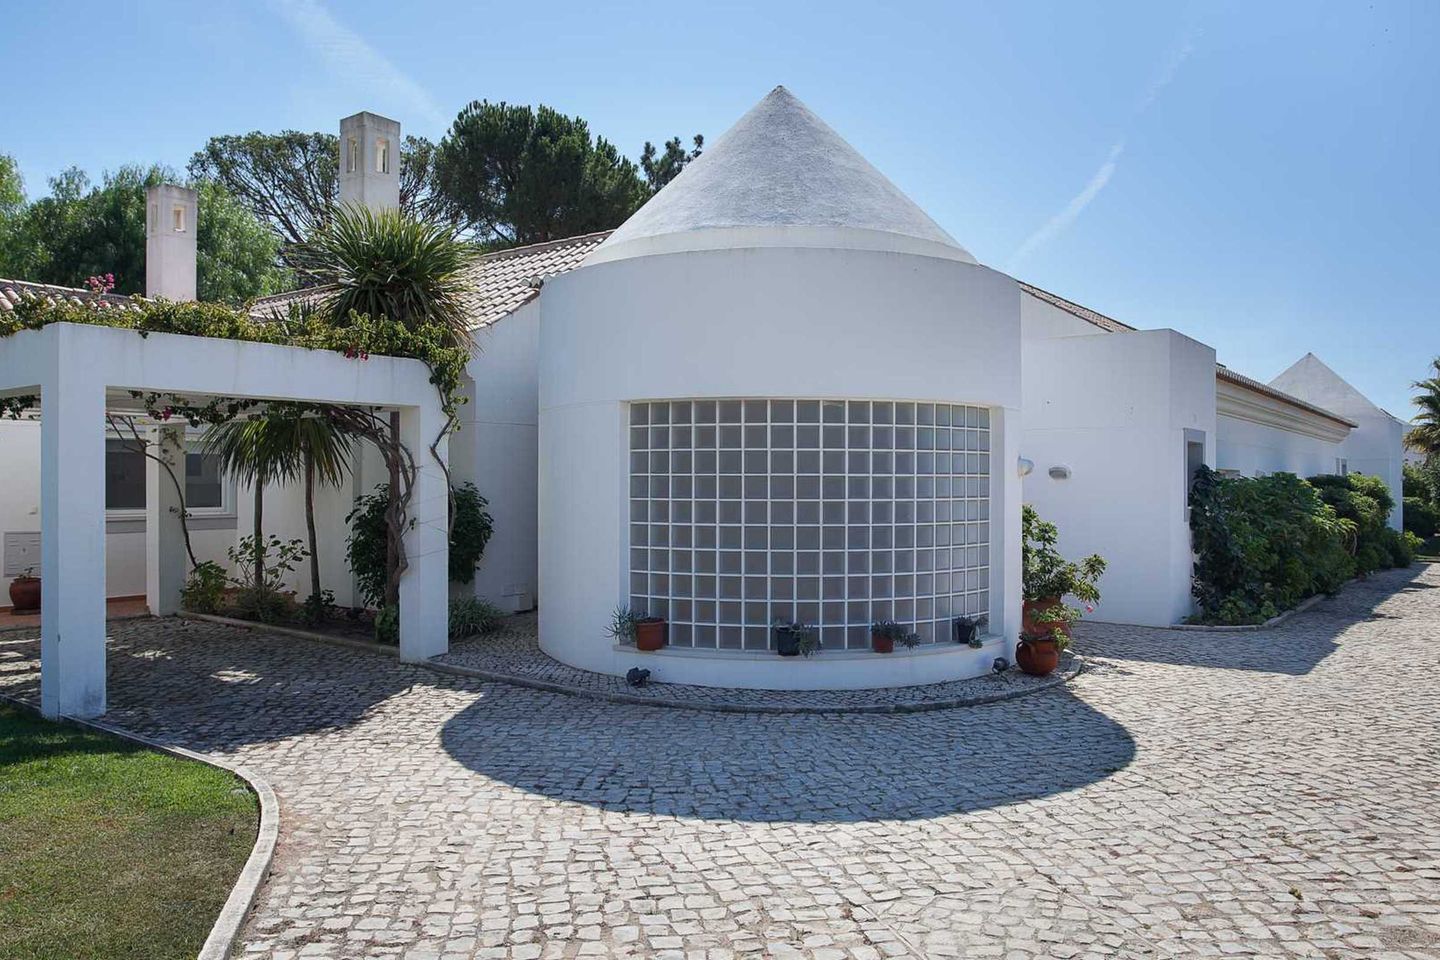 Villa to rent in Vale do Lobo,Portugal, Vale Do Lobo, Algarve, Portugal